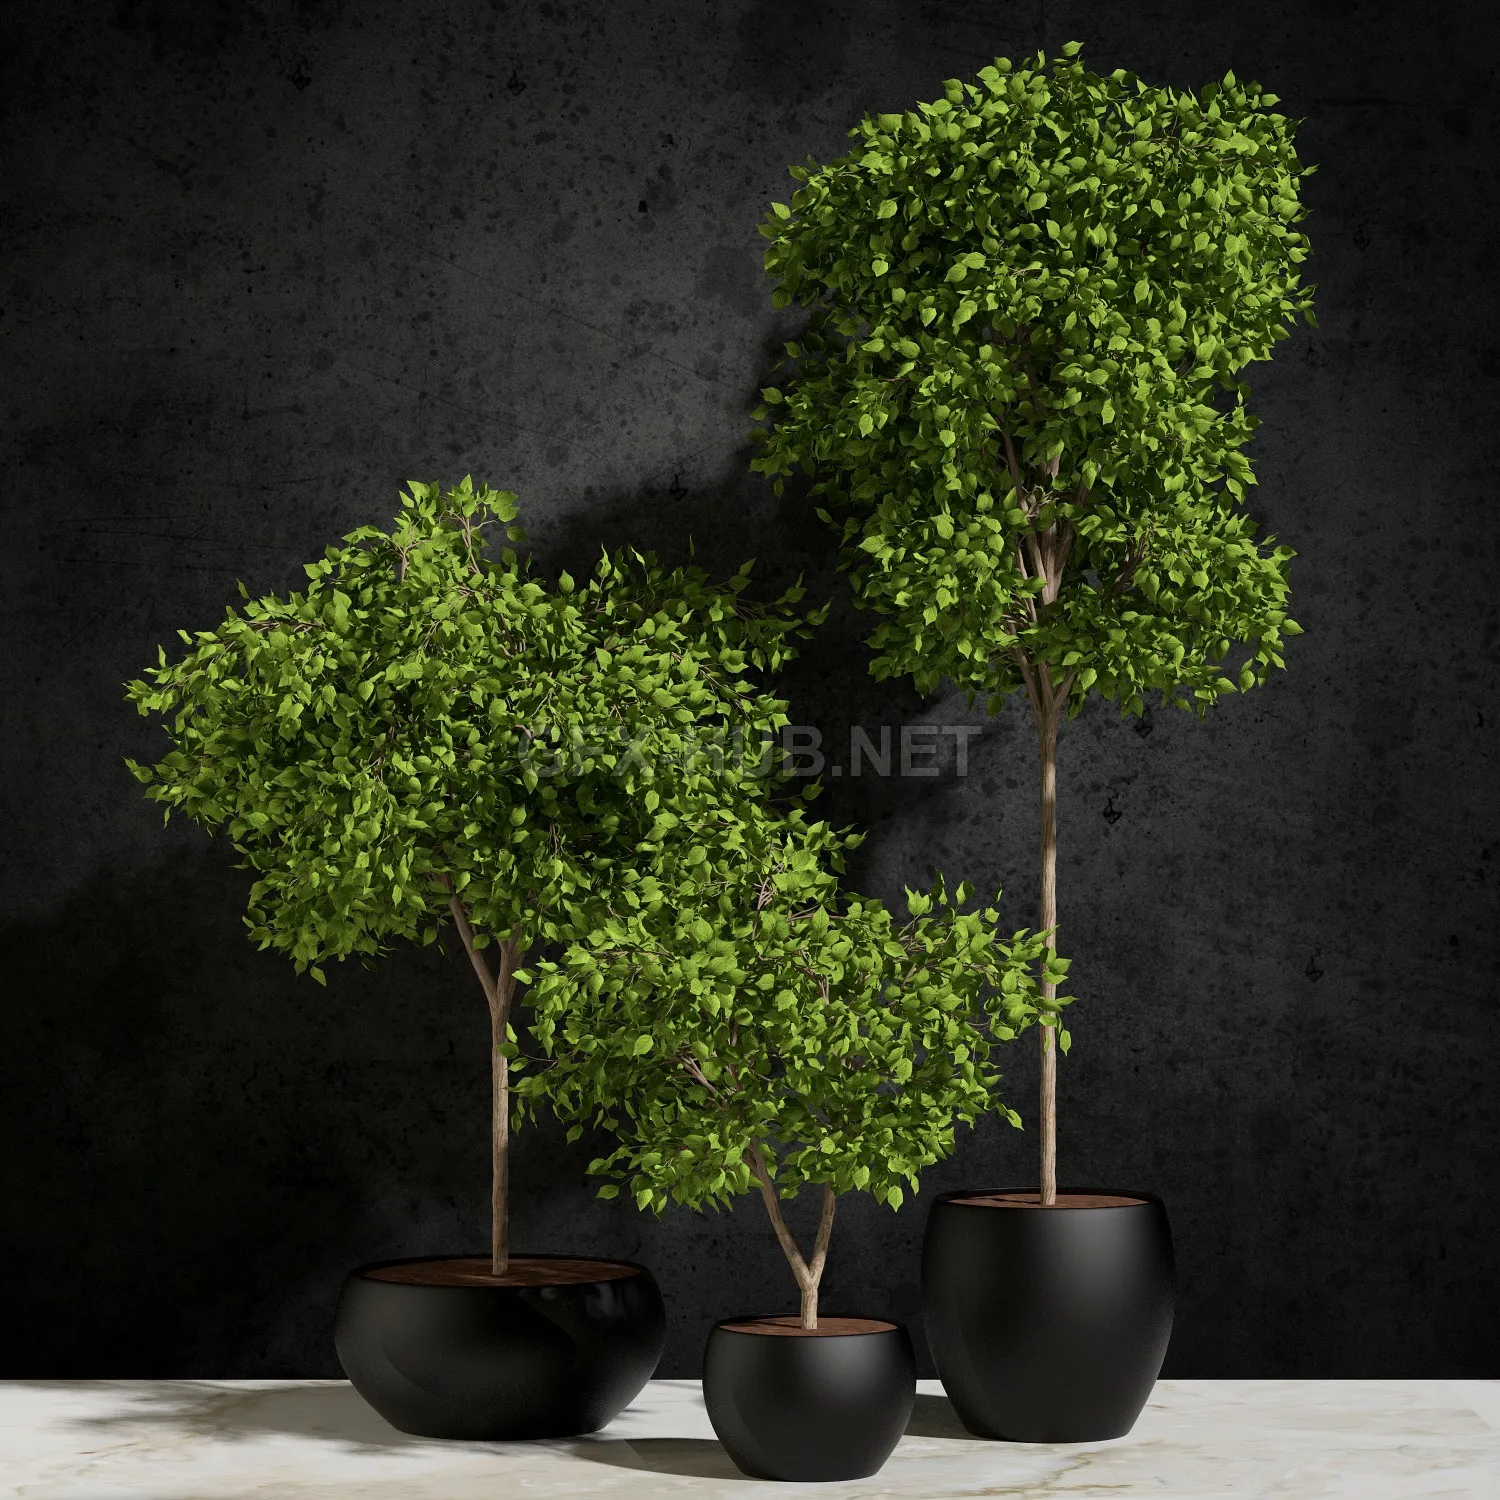 FURNITURE 3D MODELS – Plants Ficus Benjamin